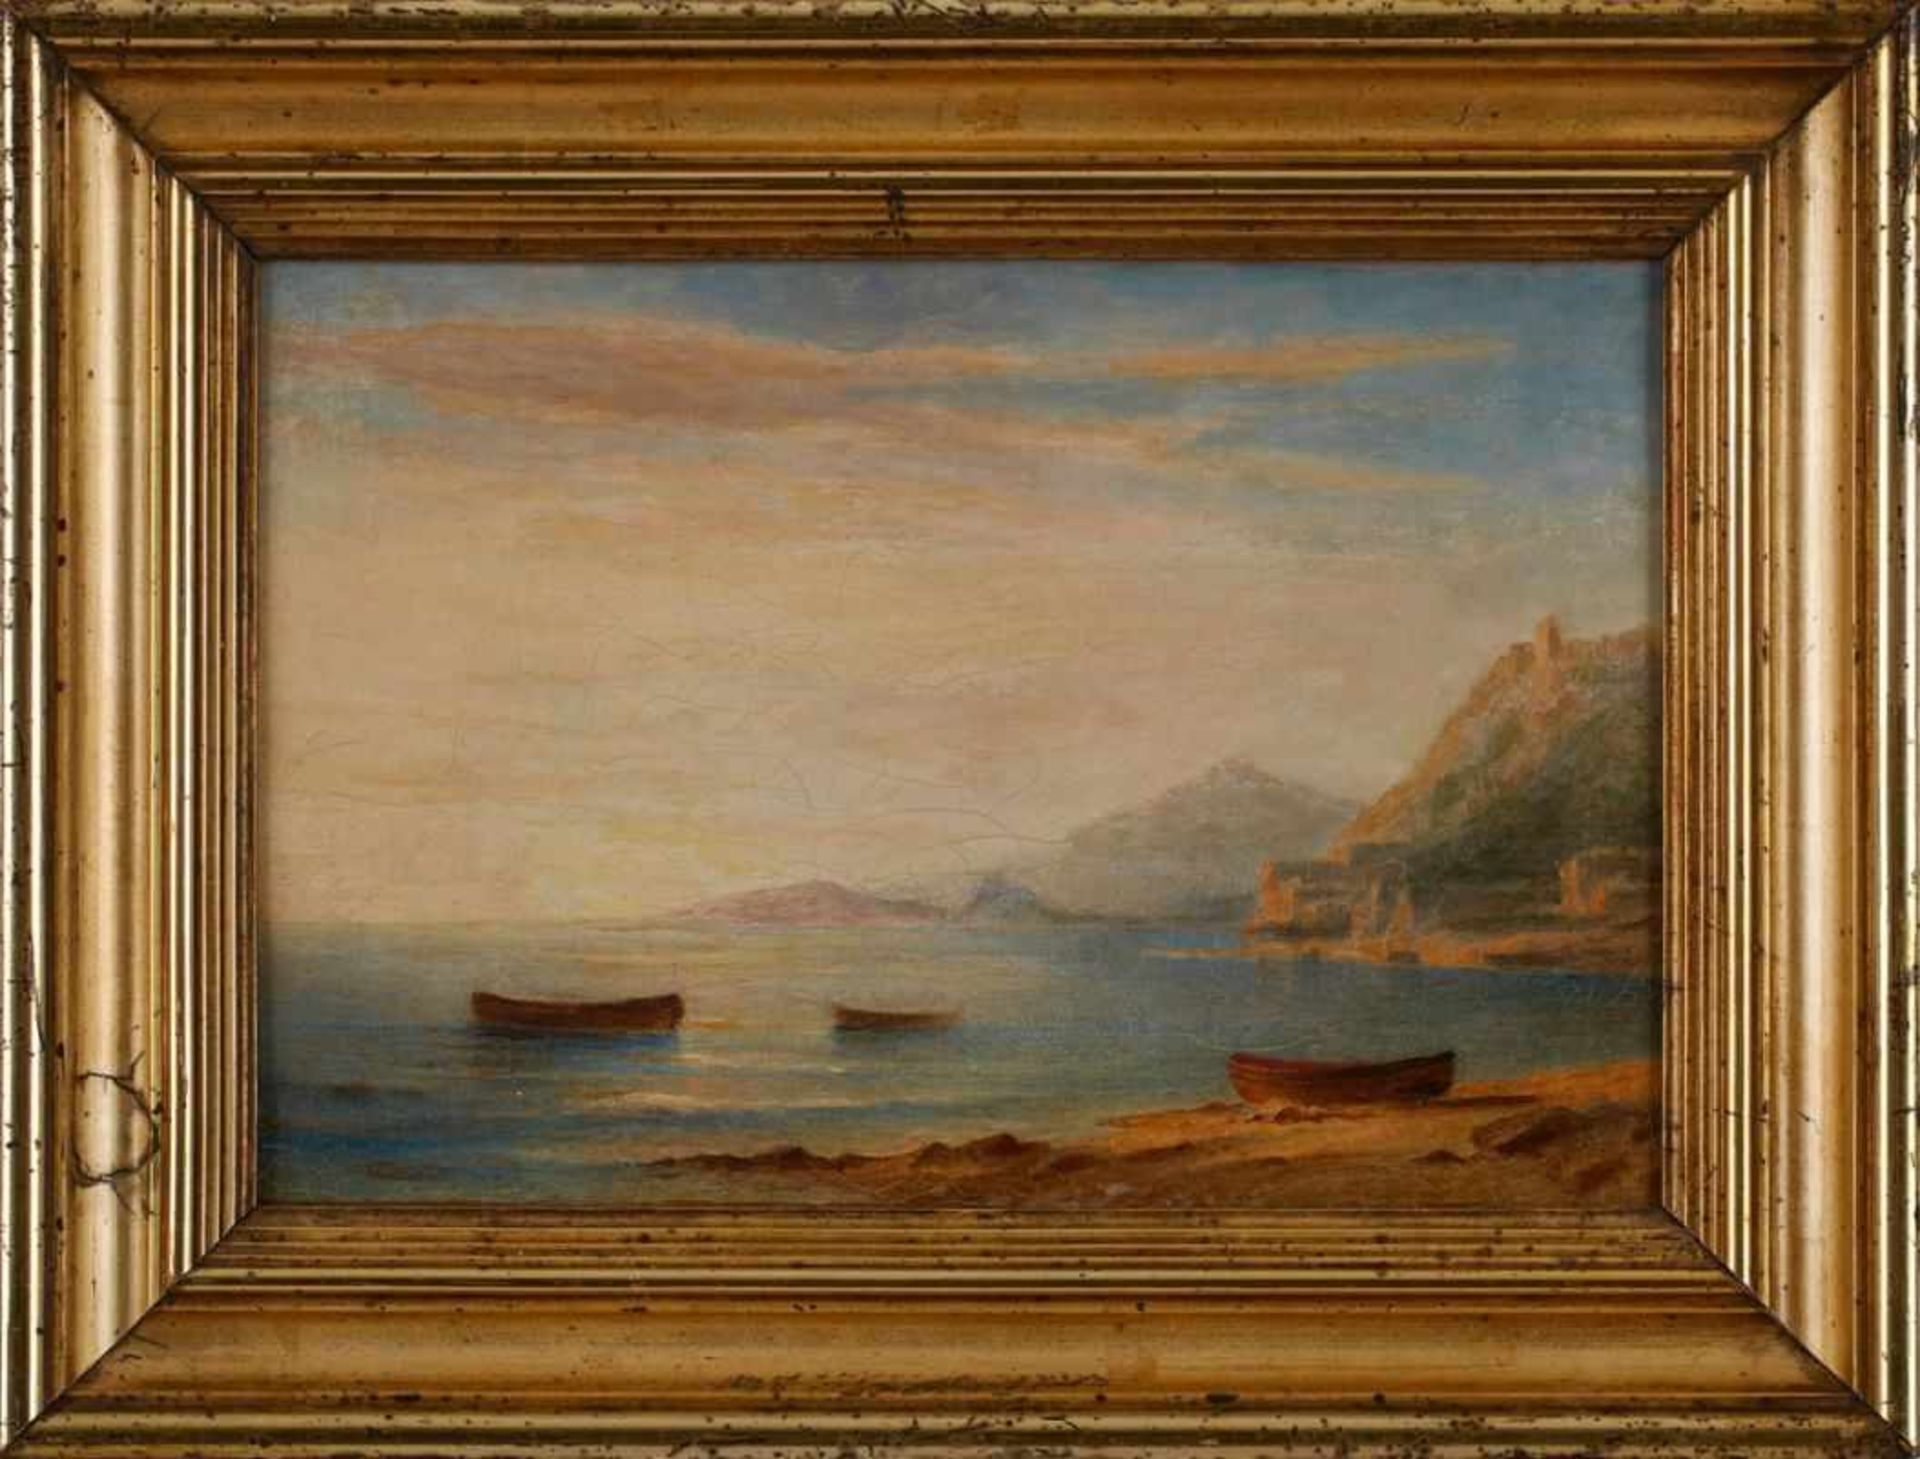 Gemälde/Ölstudie Carl Morgenstern 1811 Frannkfurt - 1893 Frankfurt "Italienische Küstenszene" - Bild 6 aus 6